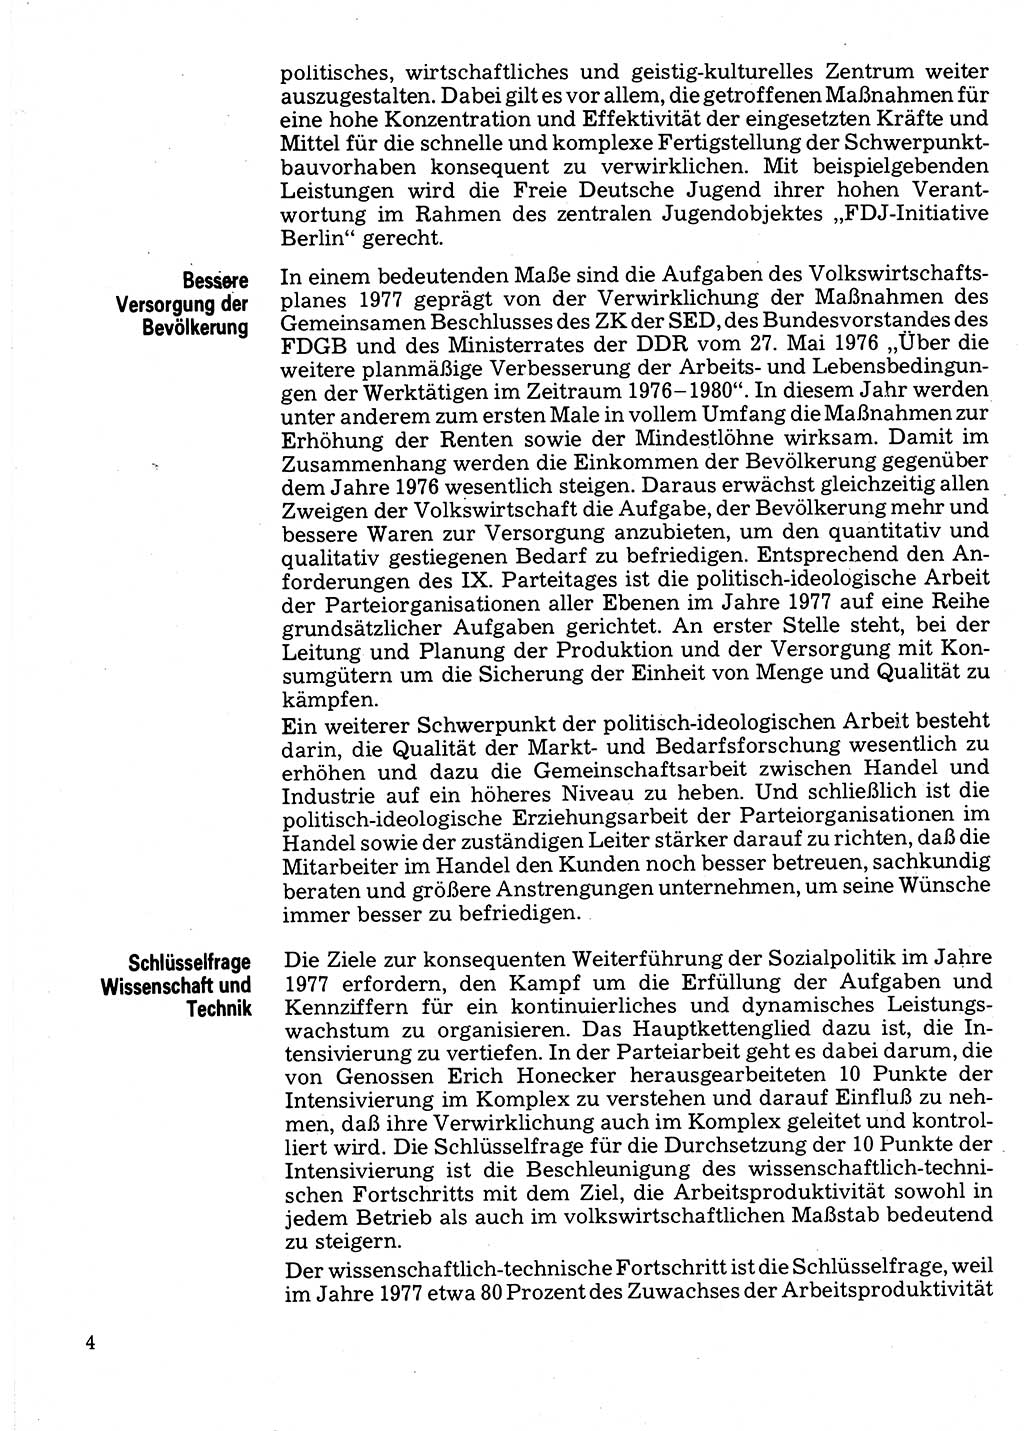 Neuer Weg (NW), Organ des Zentralkomitees (ZK) der SED (Sozialistische Einheitspartei Deutschlands) für Fragen des Parteilebens, 32. Jahrgang [Deutsche Demokratische Republik (DDR)] 1977, Seite 4 (NW ZK SED DDR 1977, S. 4)